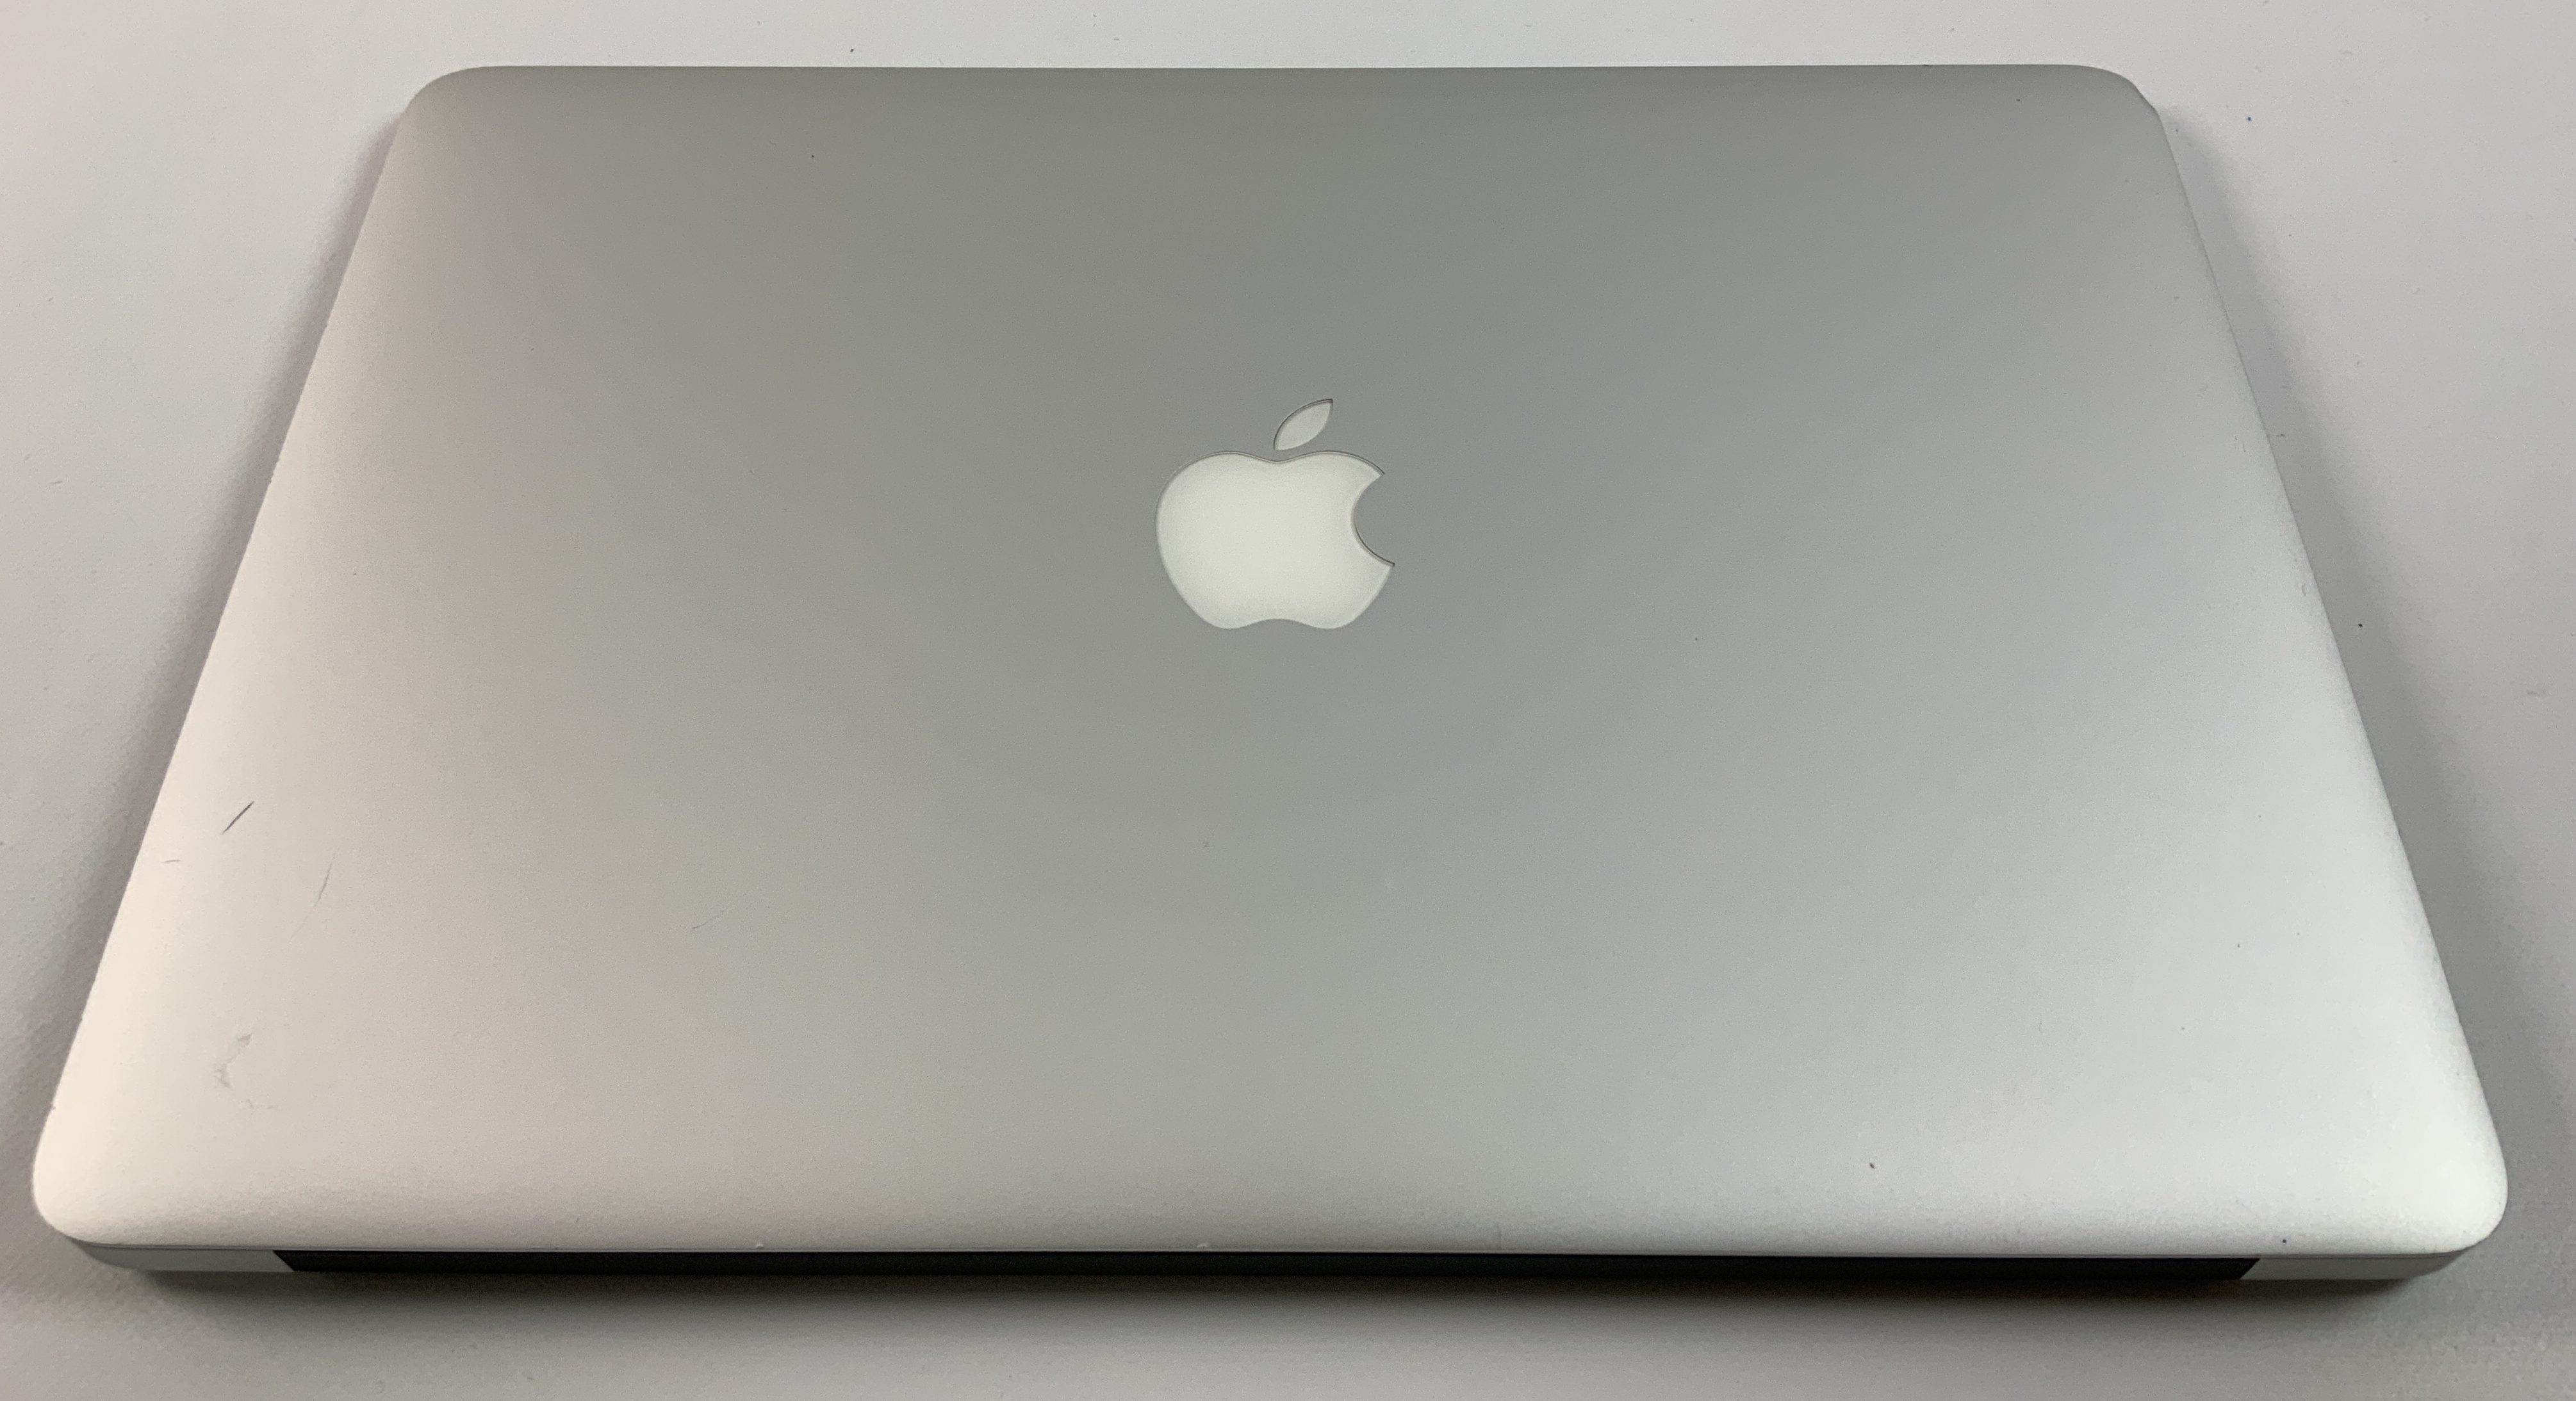 MacBook Air 13" Mid 2017 (Intel Core i5 1.8 GHz 8 GB RAM 256 GB SSD), Intel Core i5 1.8 GHz, 8 GB RAM, 256 GB SSD, immagine 2